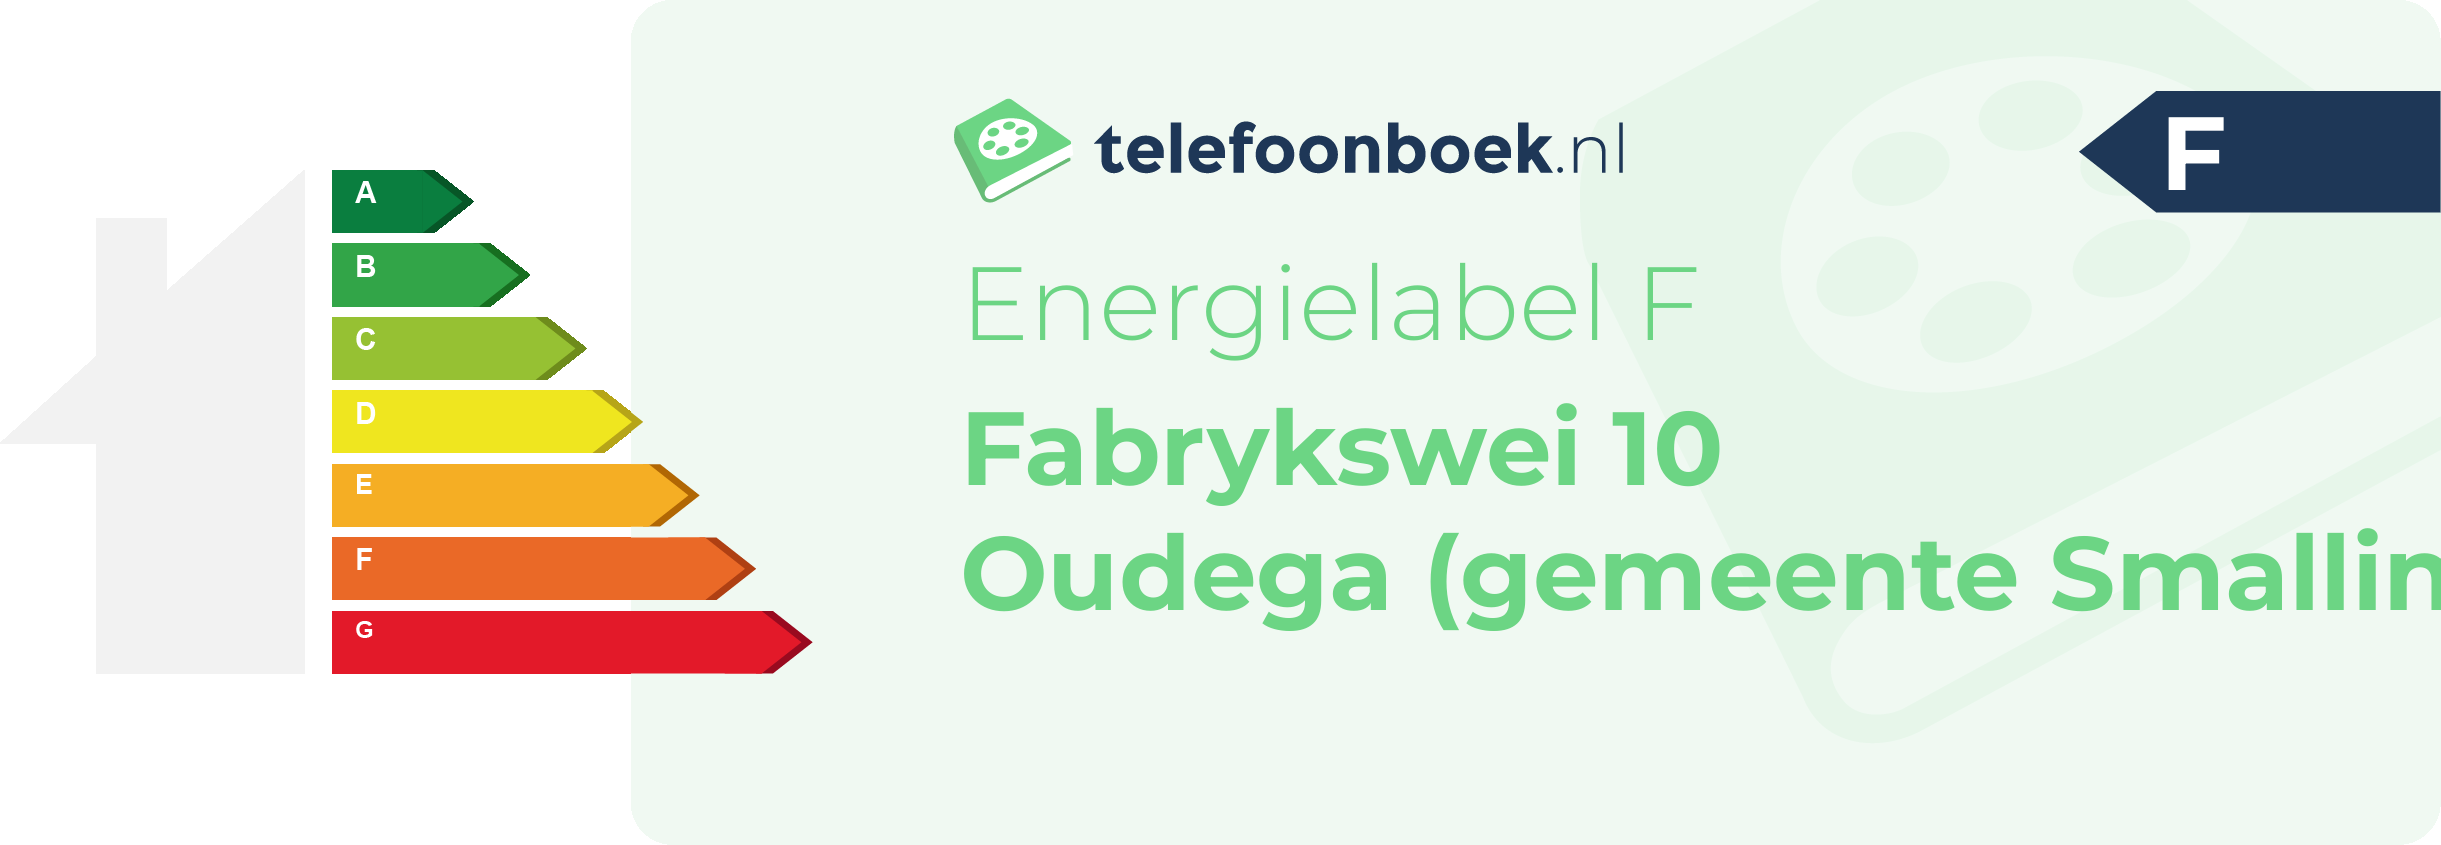 Energielabel Fabrykswei 10 Oudega (gemeente Smallingerland Friesland)